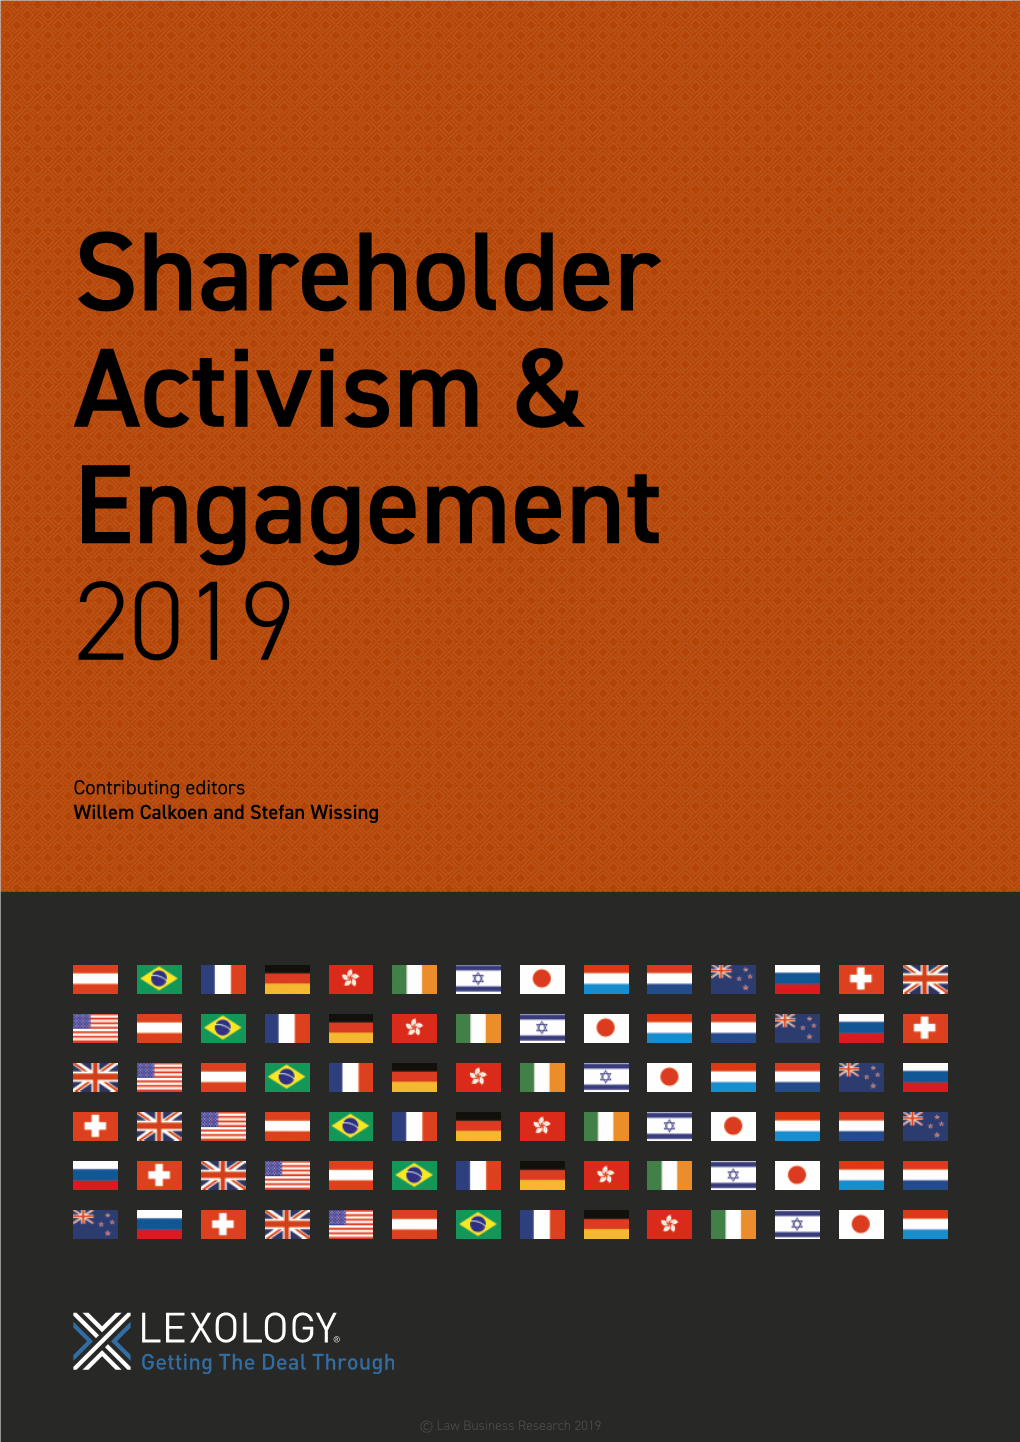 Shareholder Activism & Engagement 2019